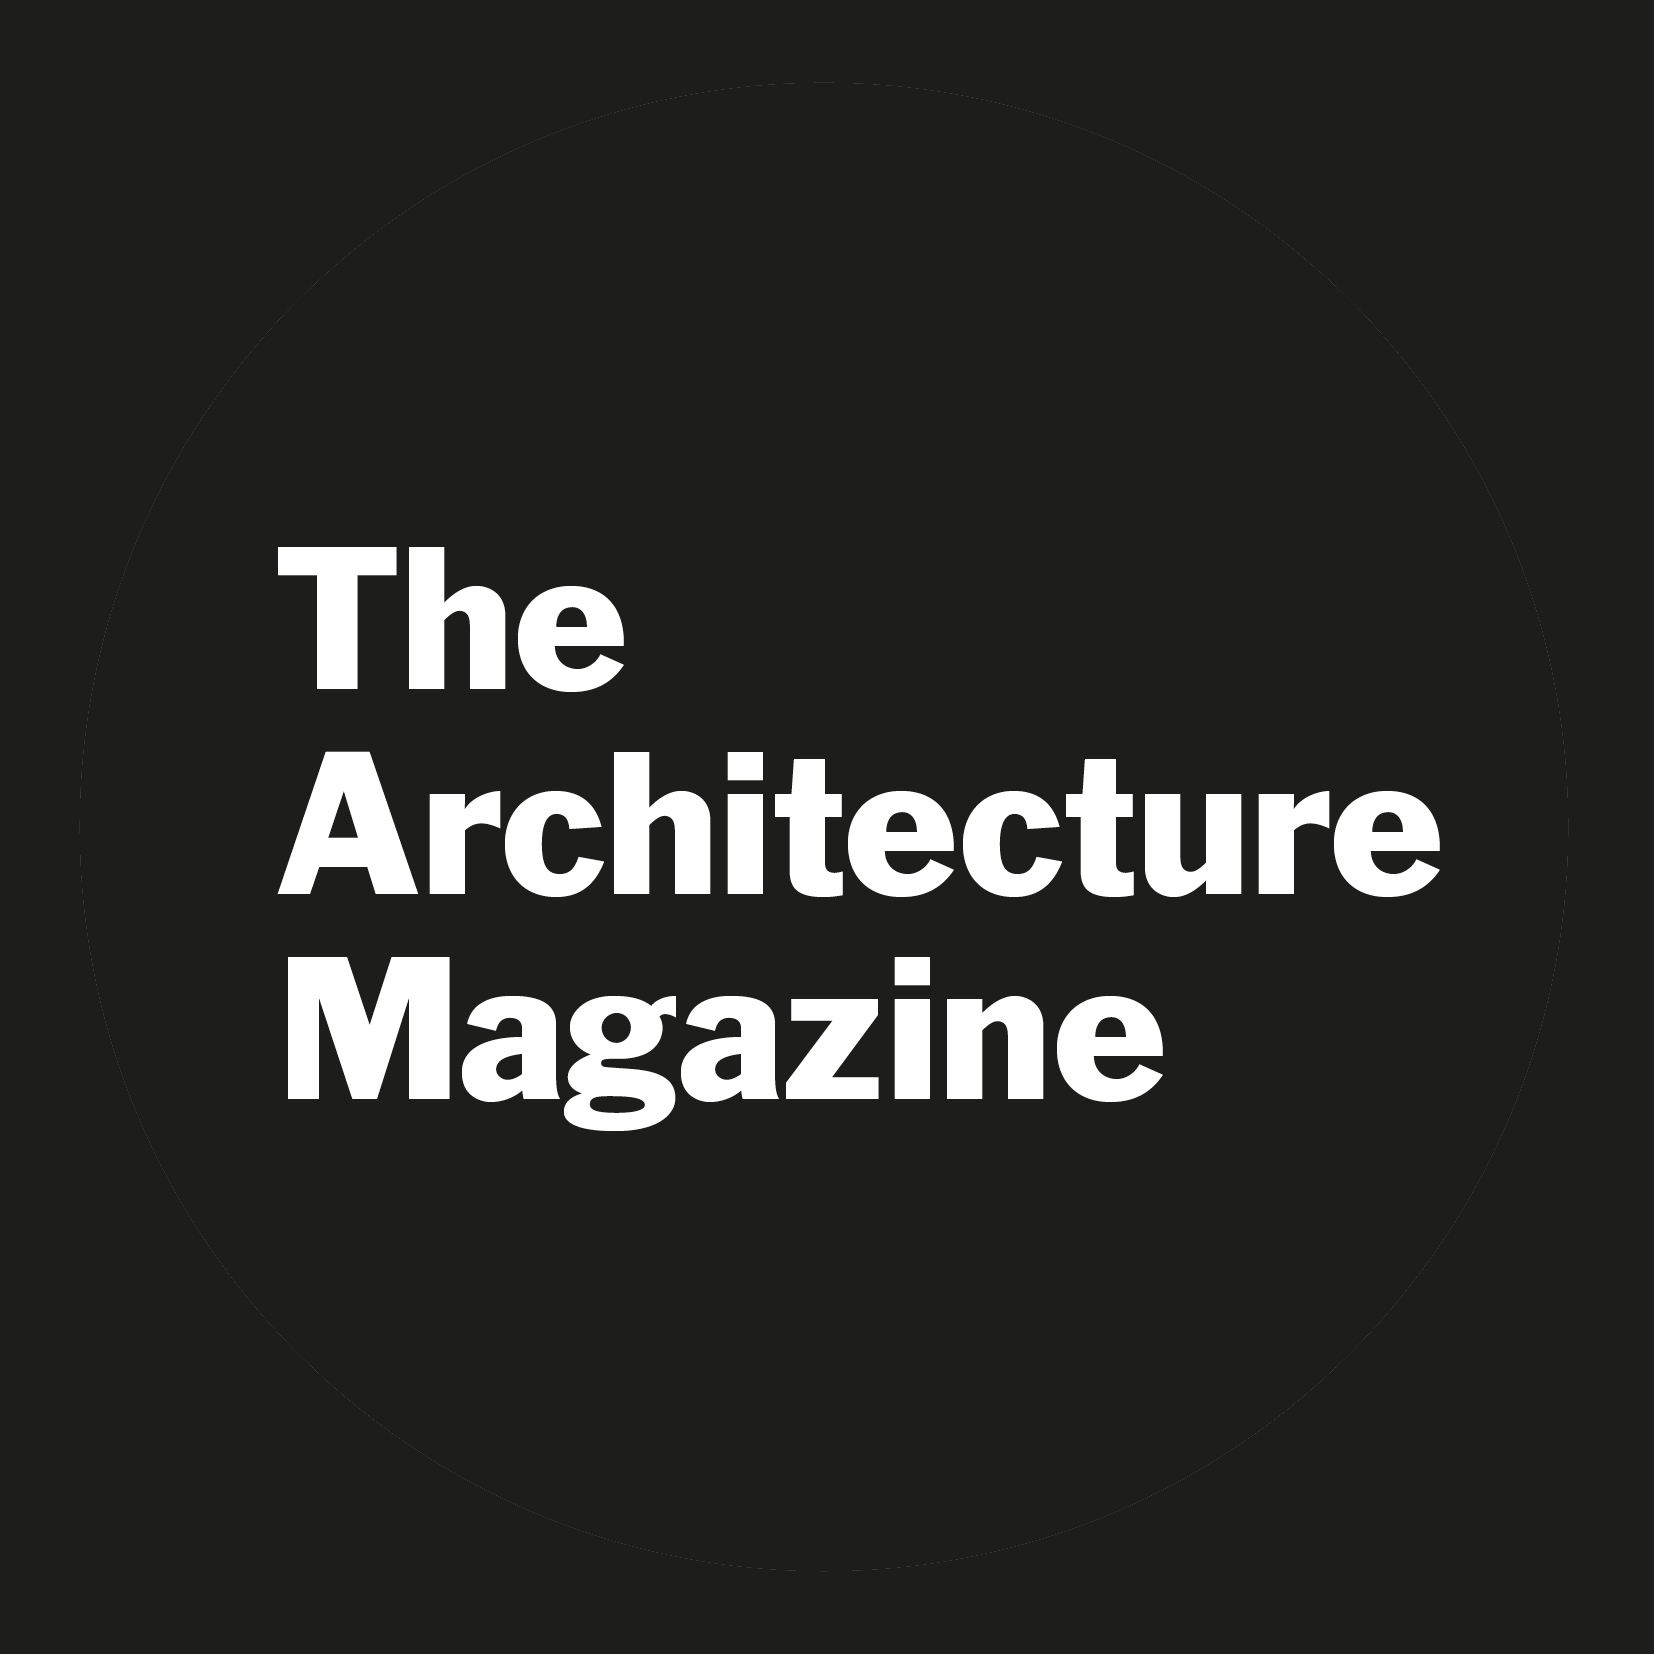 The Architecture Magazine